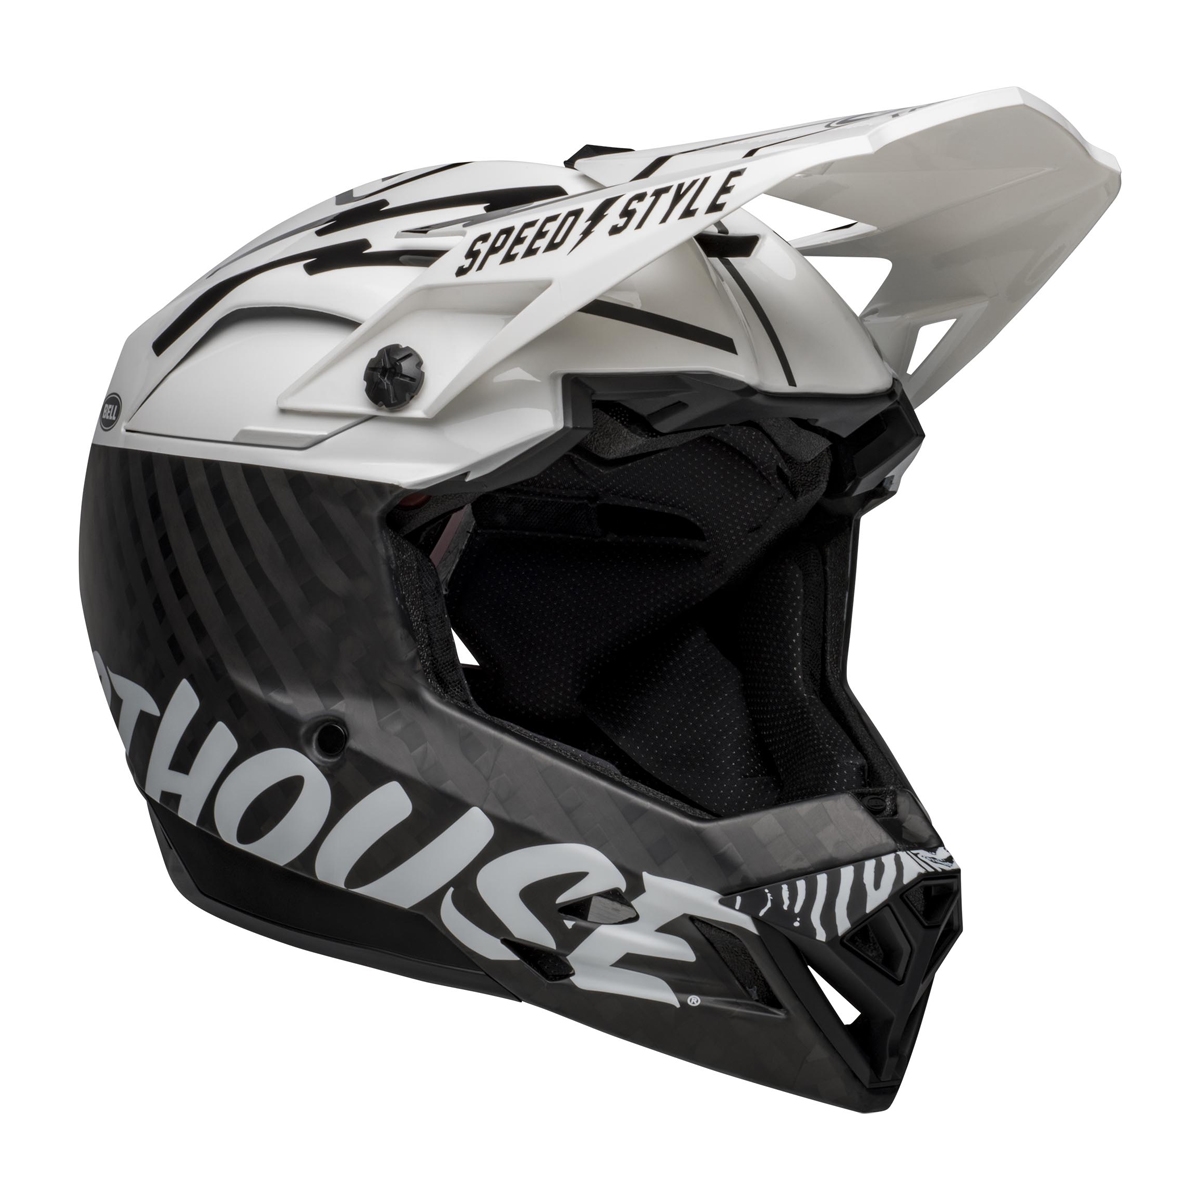 Full-10 Spherical Fasthouse Carbon Full Face Helmet Size XS/S (51-55cm)